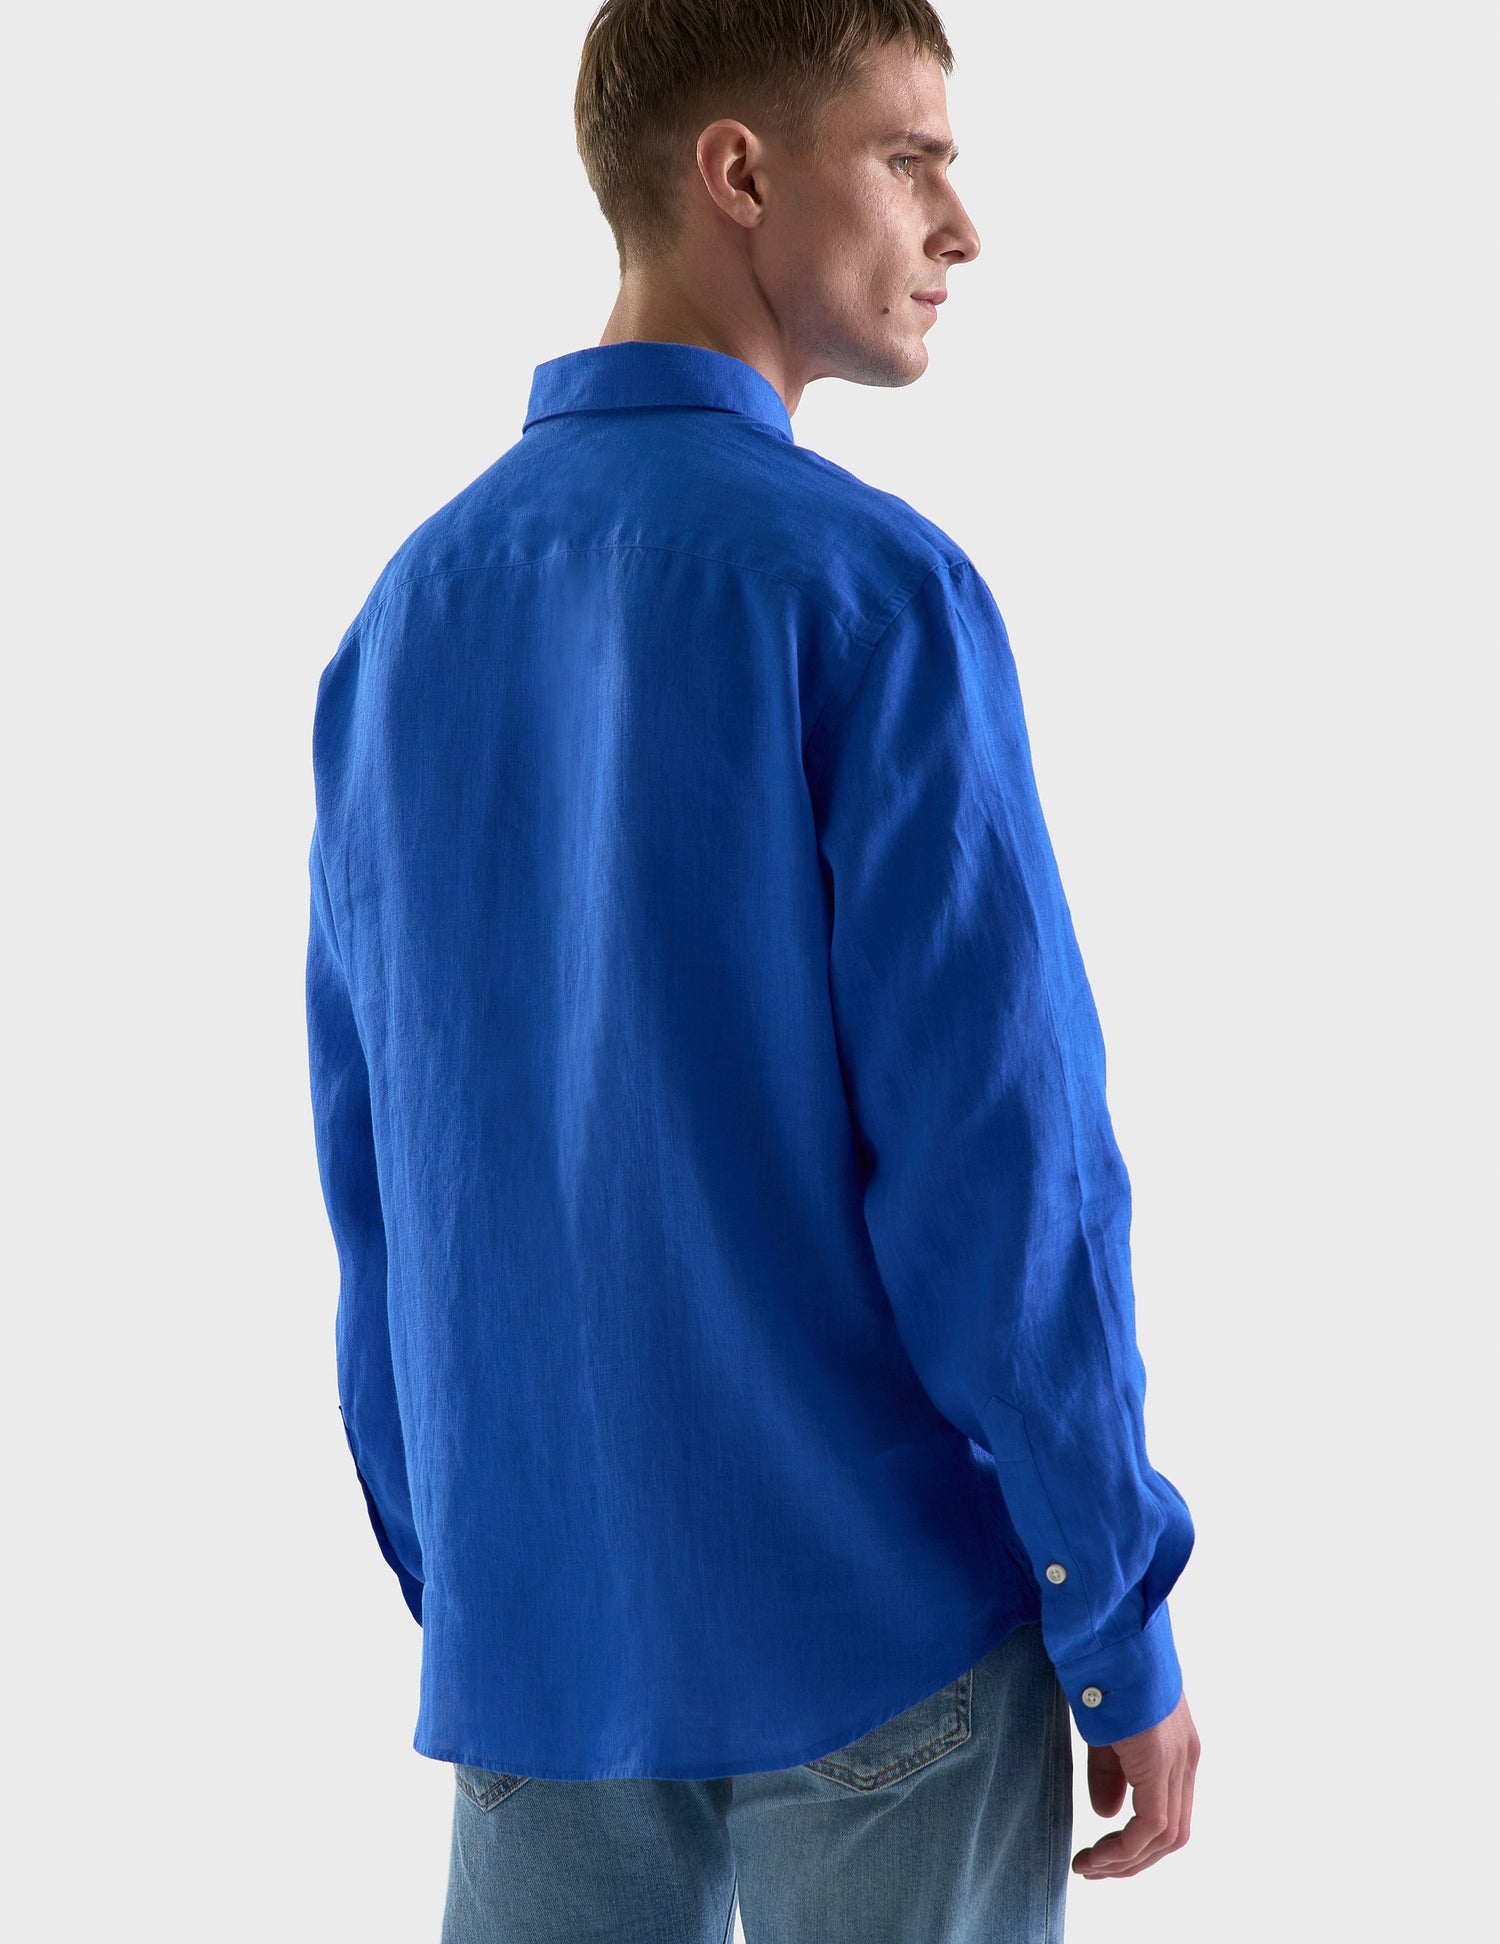 Gaspard shirt in intense blue linen - Linen - American Collar#2